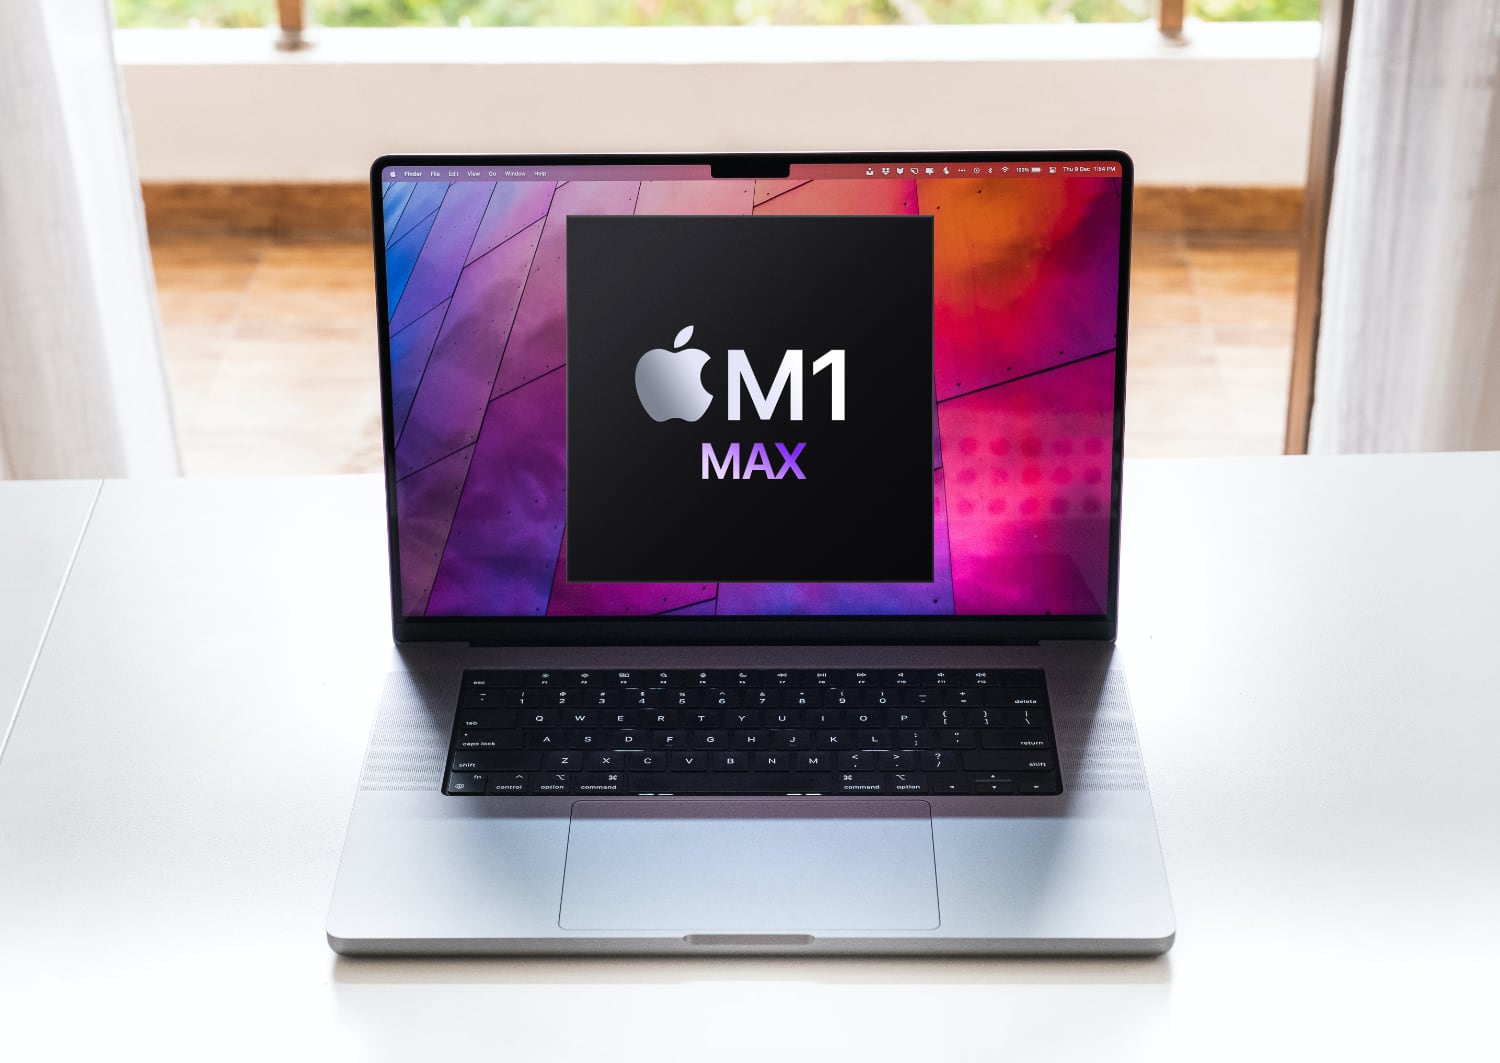 MacBook Pro с M1 Max в три раза быстрее экспортирует видео ProRes, чем топовый Mac Pro